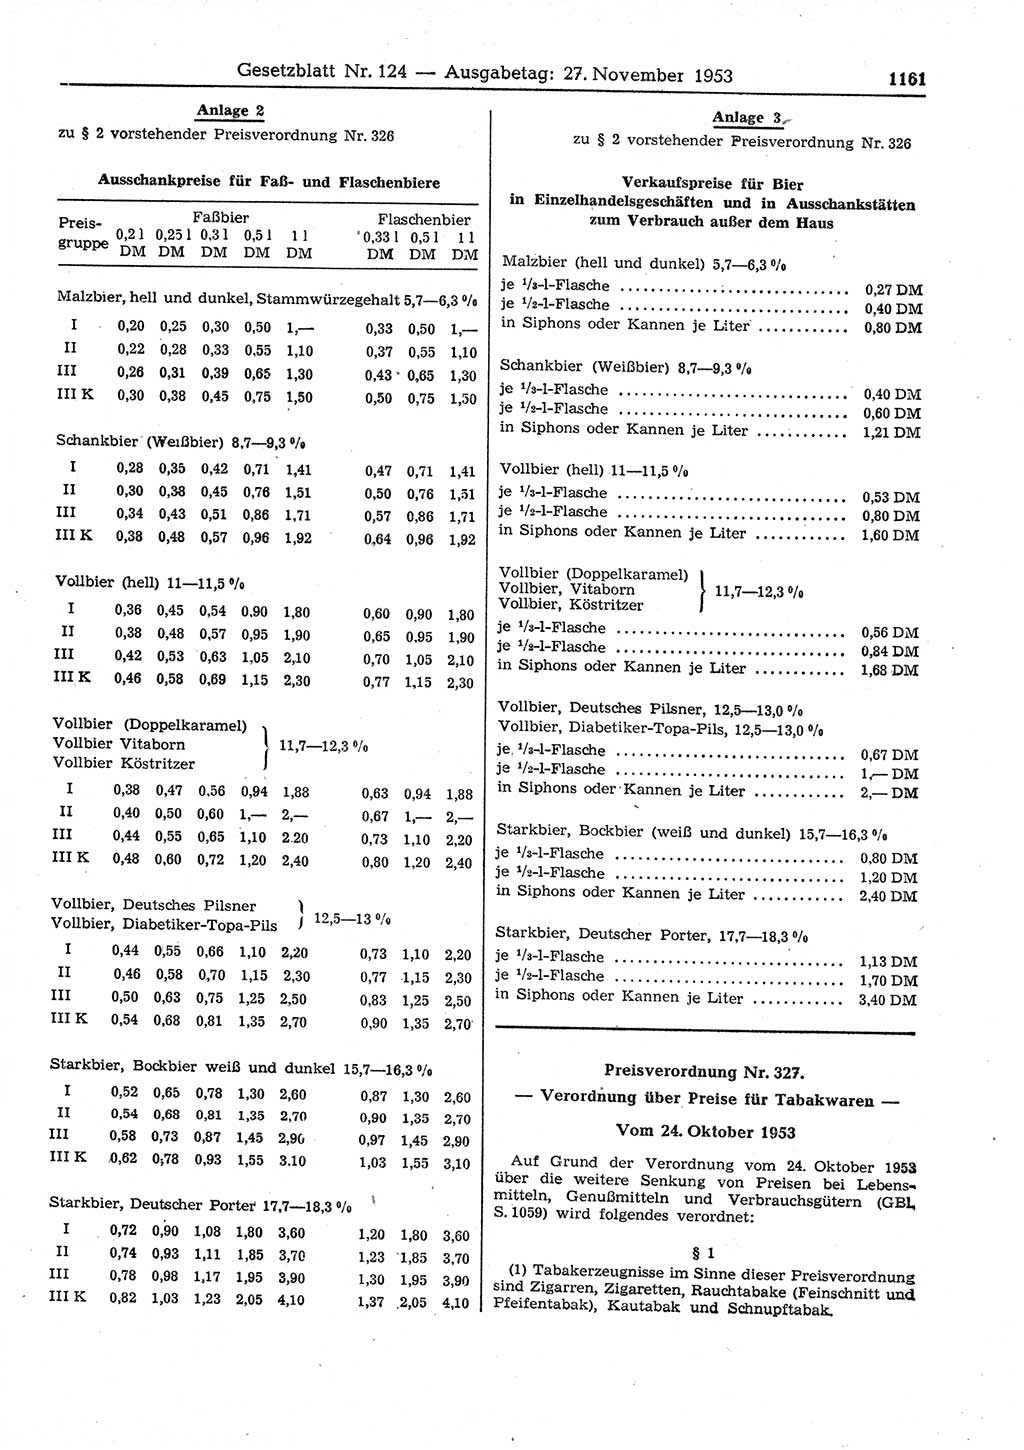 Gesetzblatt (GBl.) der Deutschen Demokratischen Republik (DDR) 1953, Seite 1161 (GBl. DDR 1953, S. 1161)